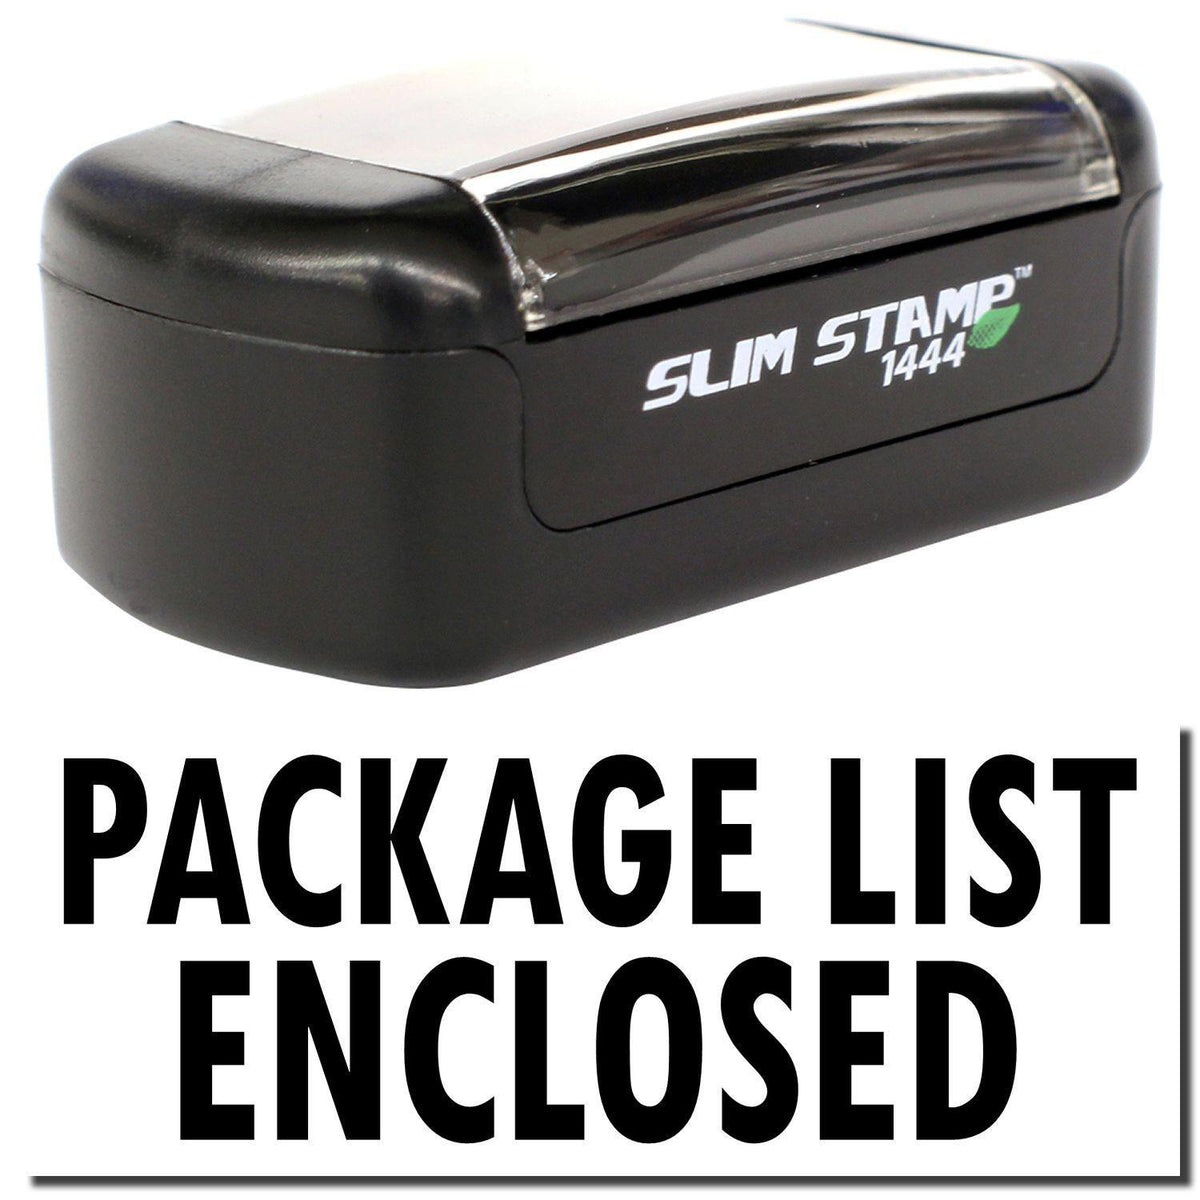 Slim Pre Inked Package List Enclosed Stamp Main Image